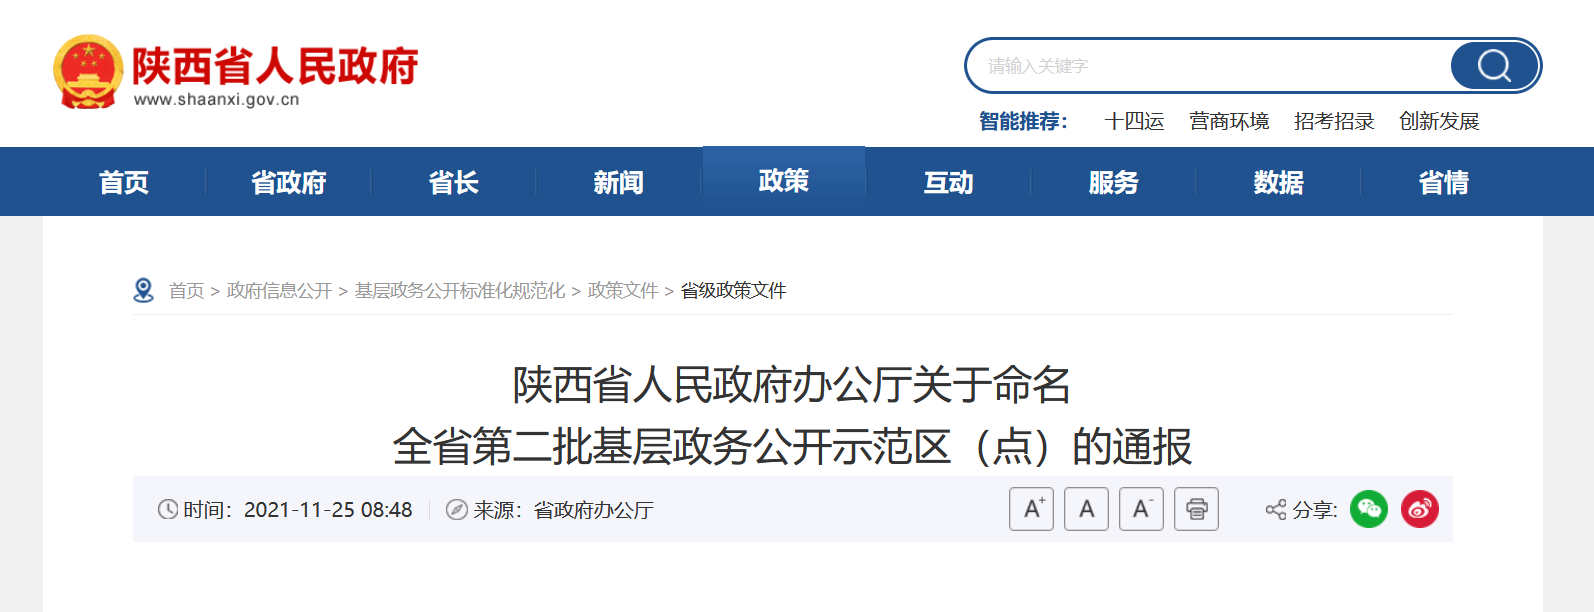 <b>陕西省第二批基层政务公开示范区（点）名单公布 9县（区）17个单位入选</b>